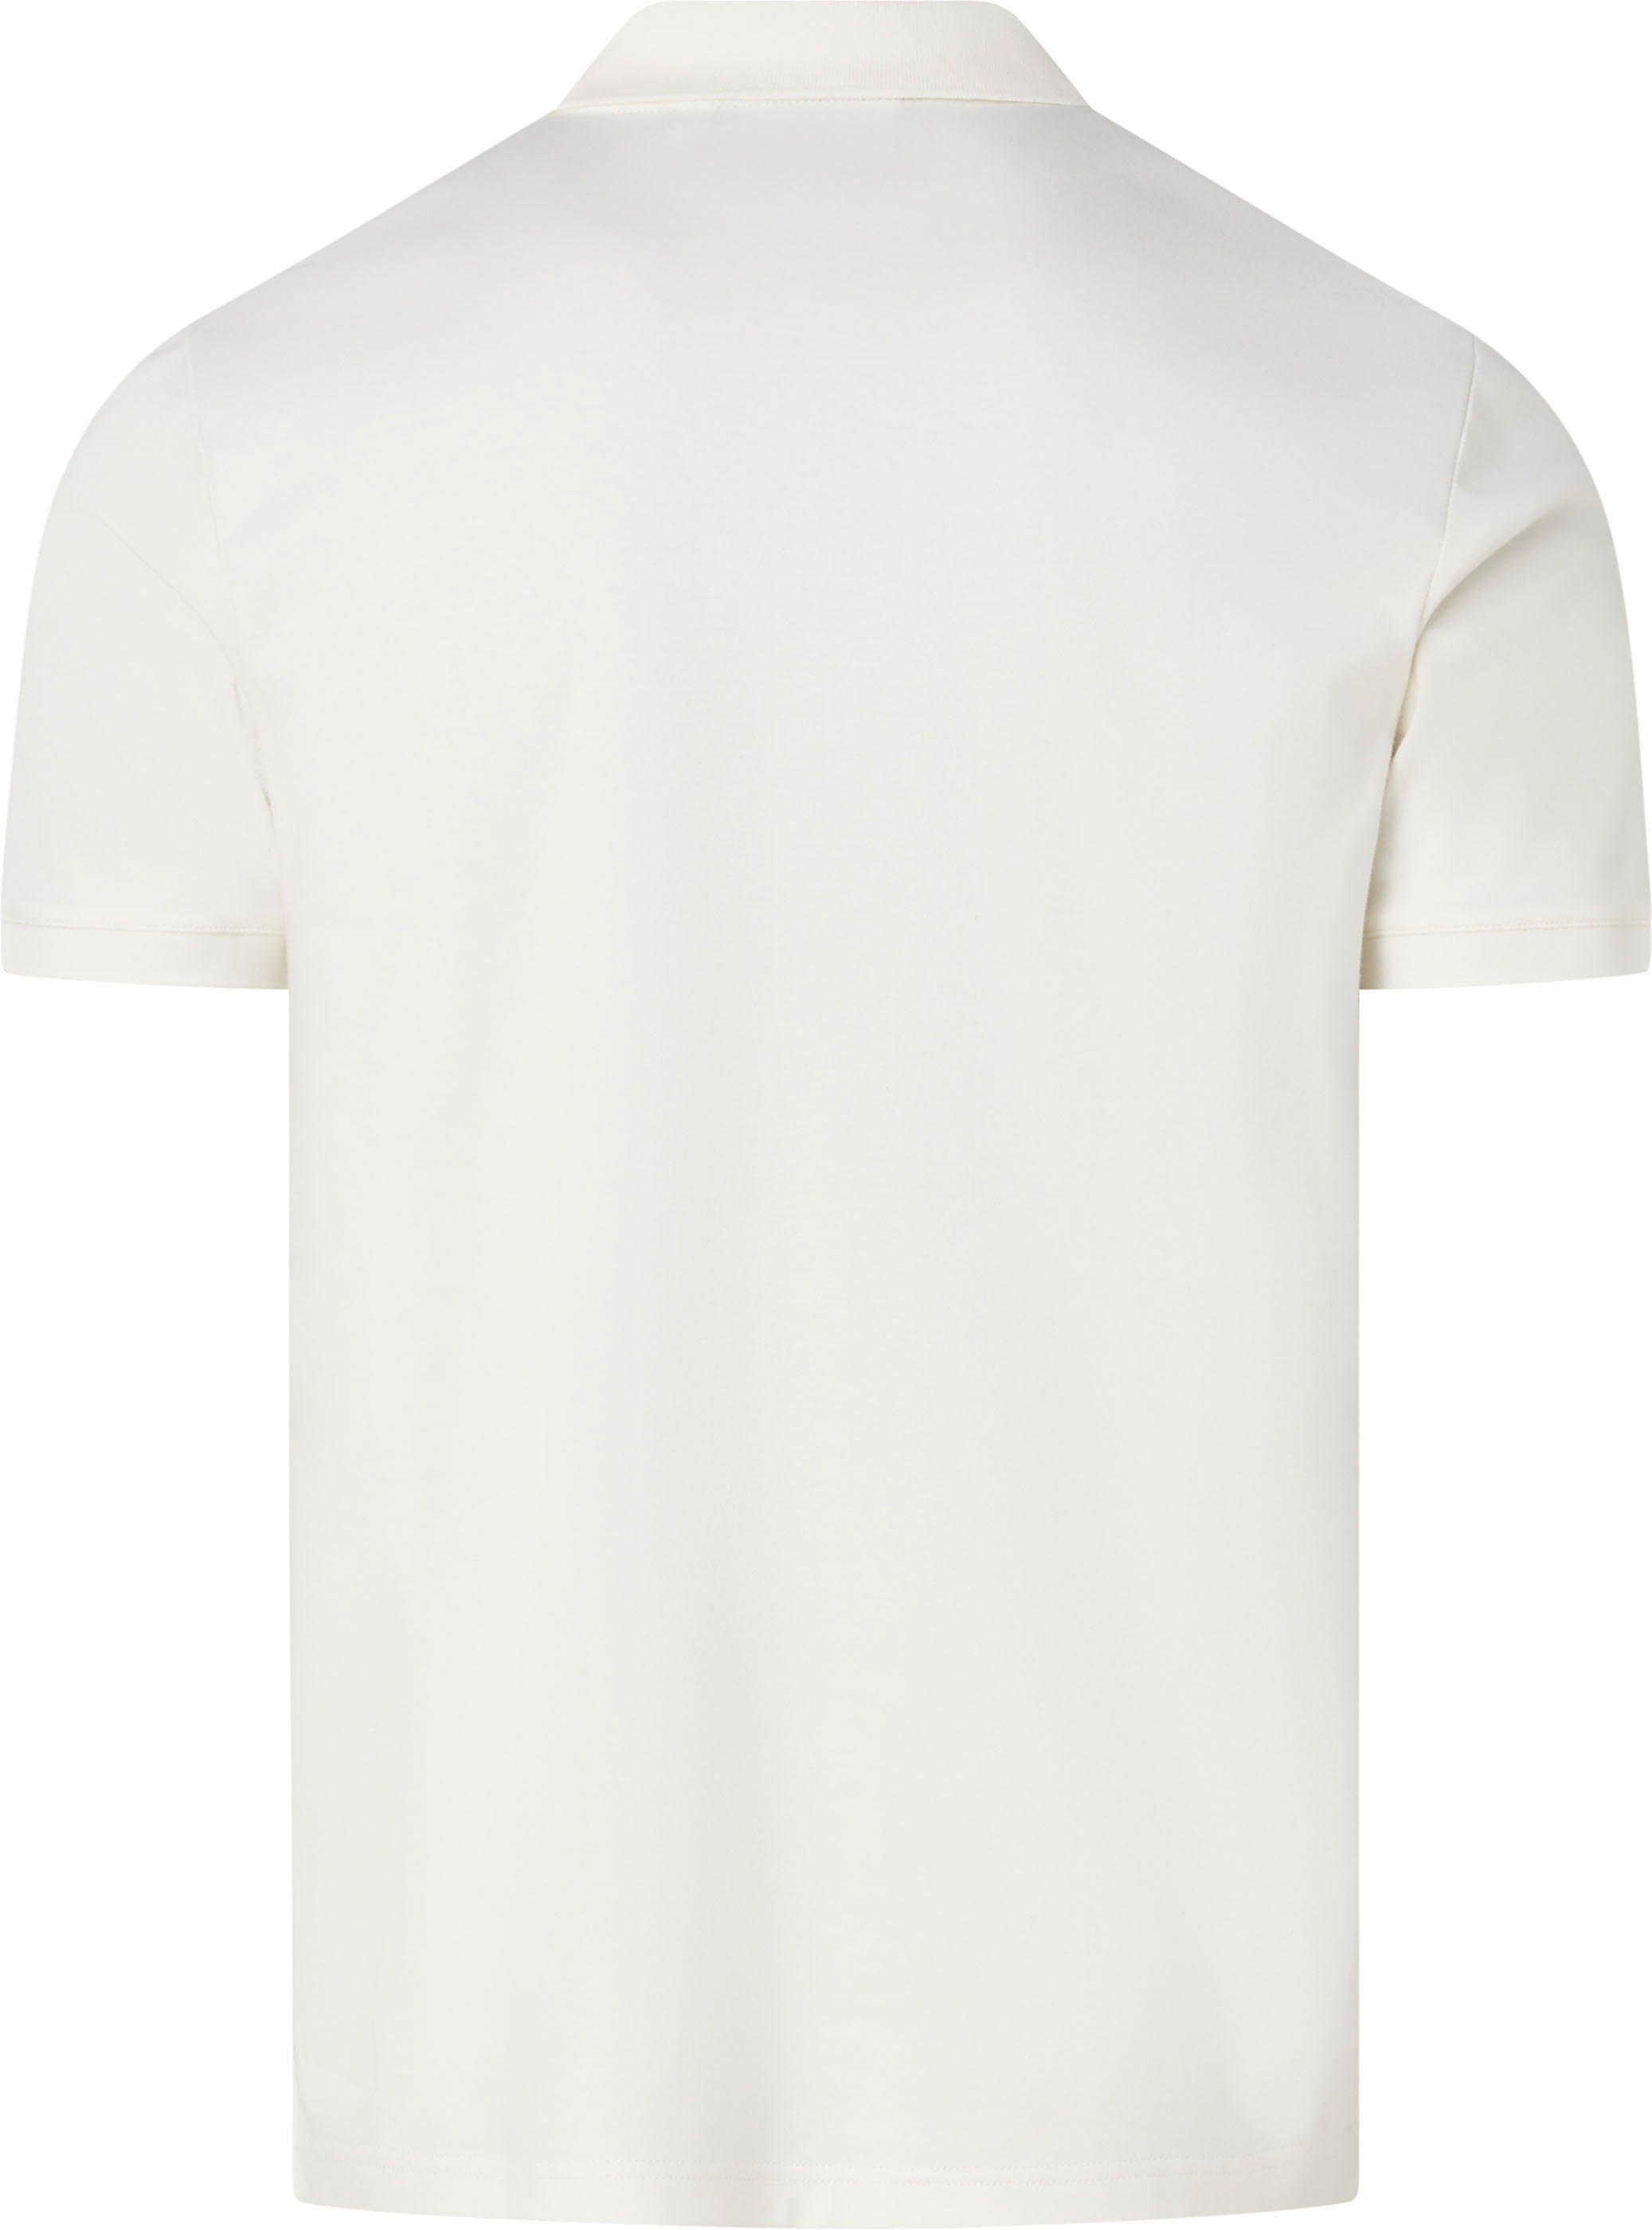 Calvin Klein Poloshirt, mit Calvin Klein Logo auf der Brust